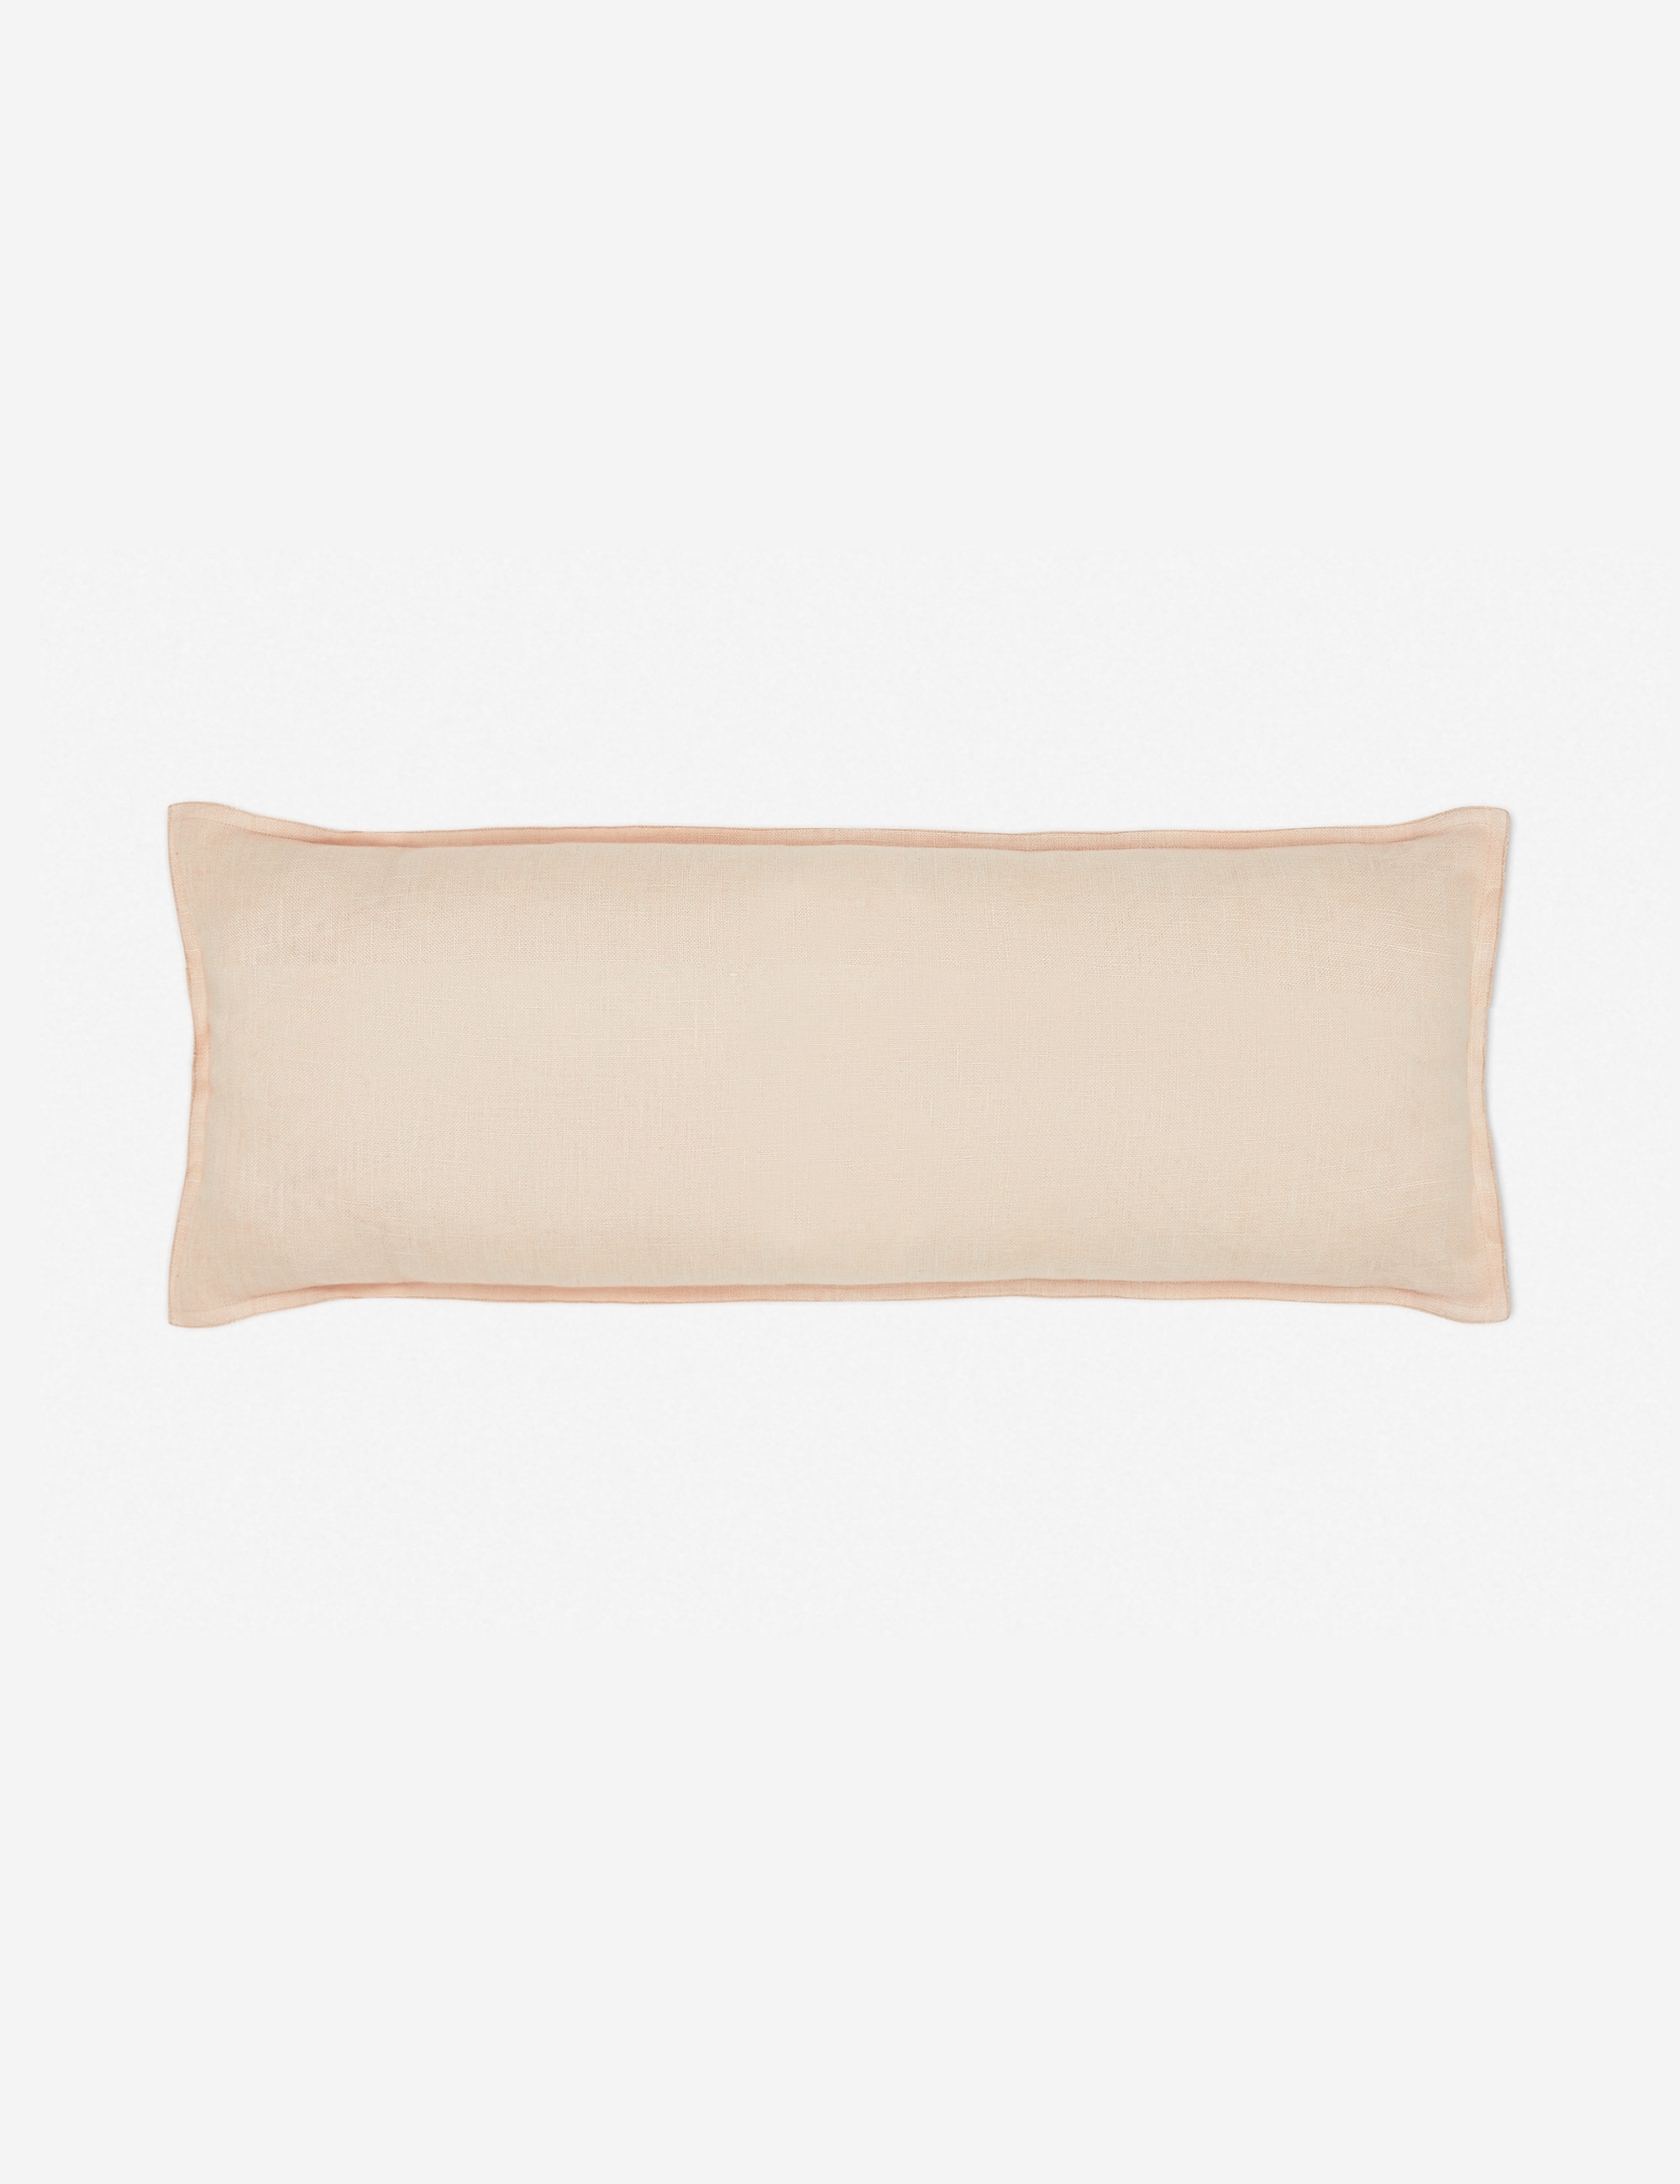 Arlo Linen Long Lumbar Pillow, Blush - Image 0